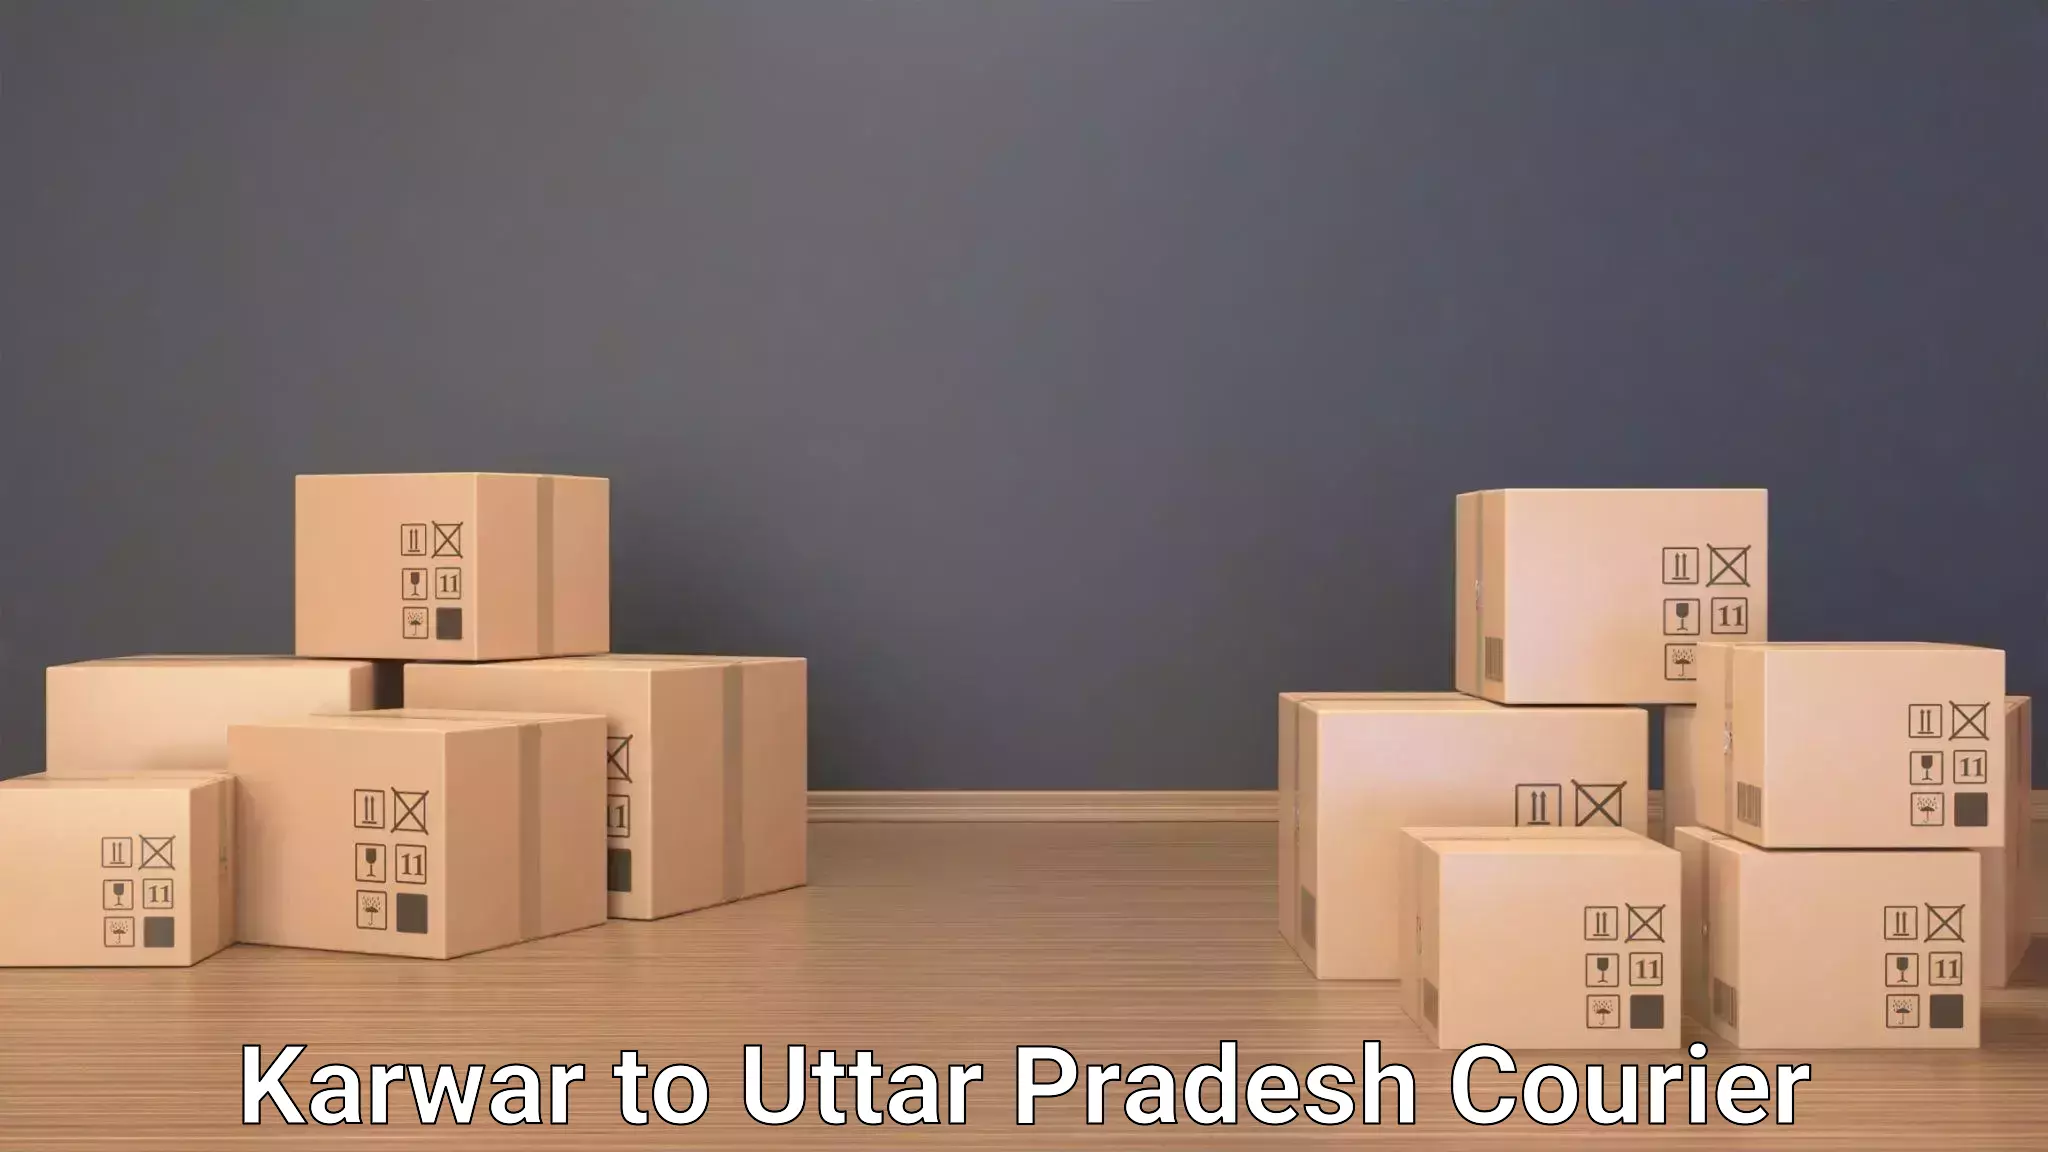 Baggage transport scheduler Karwar to Uttar Pradesh